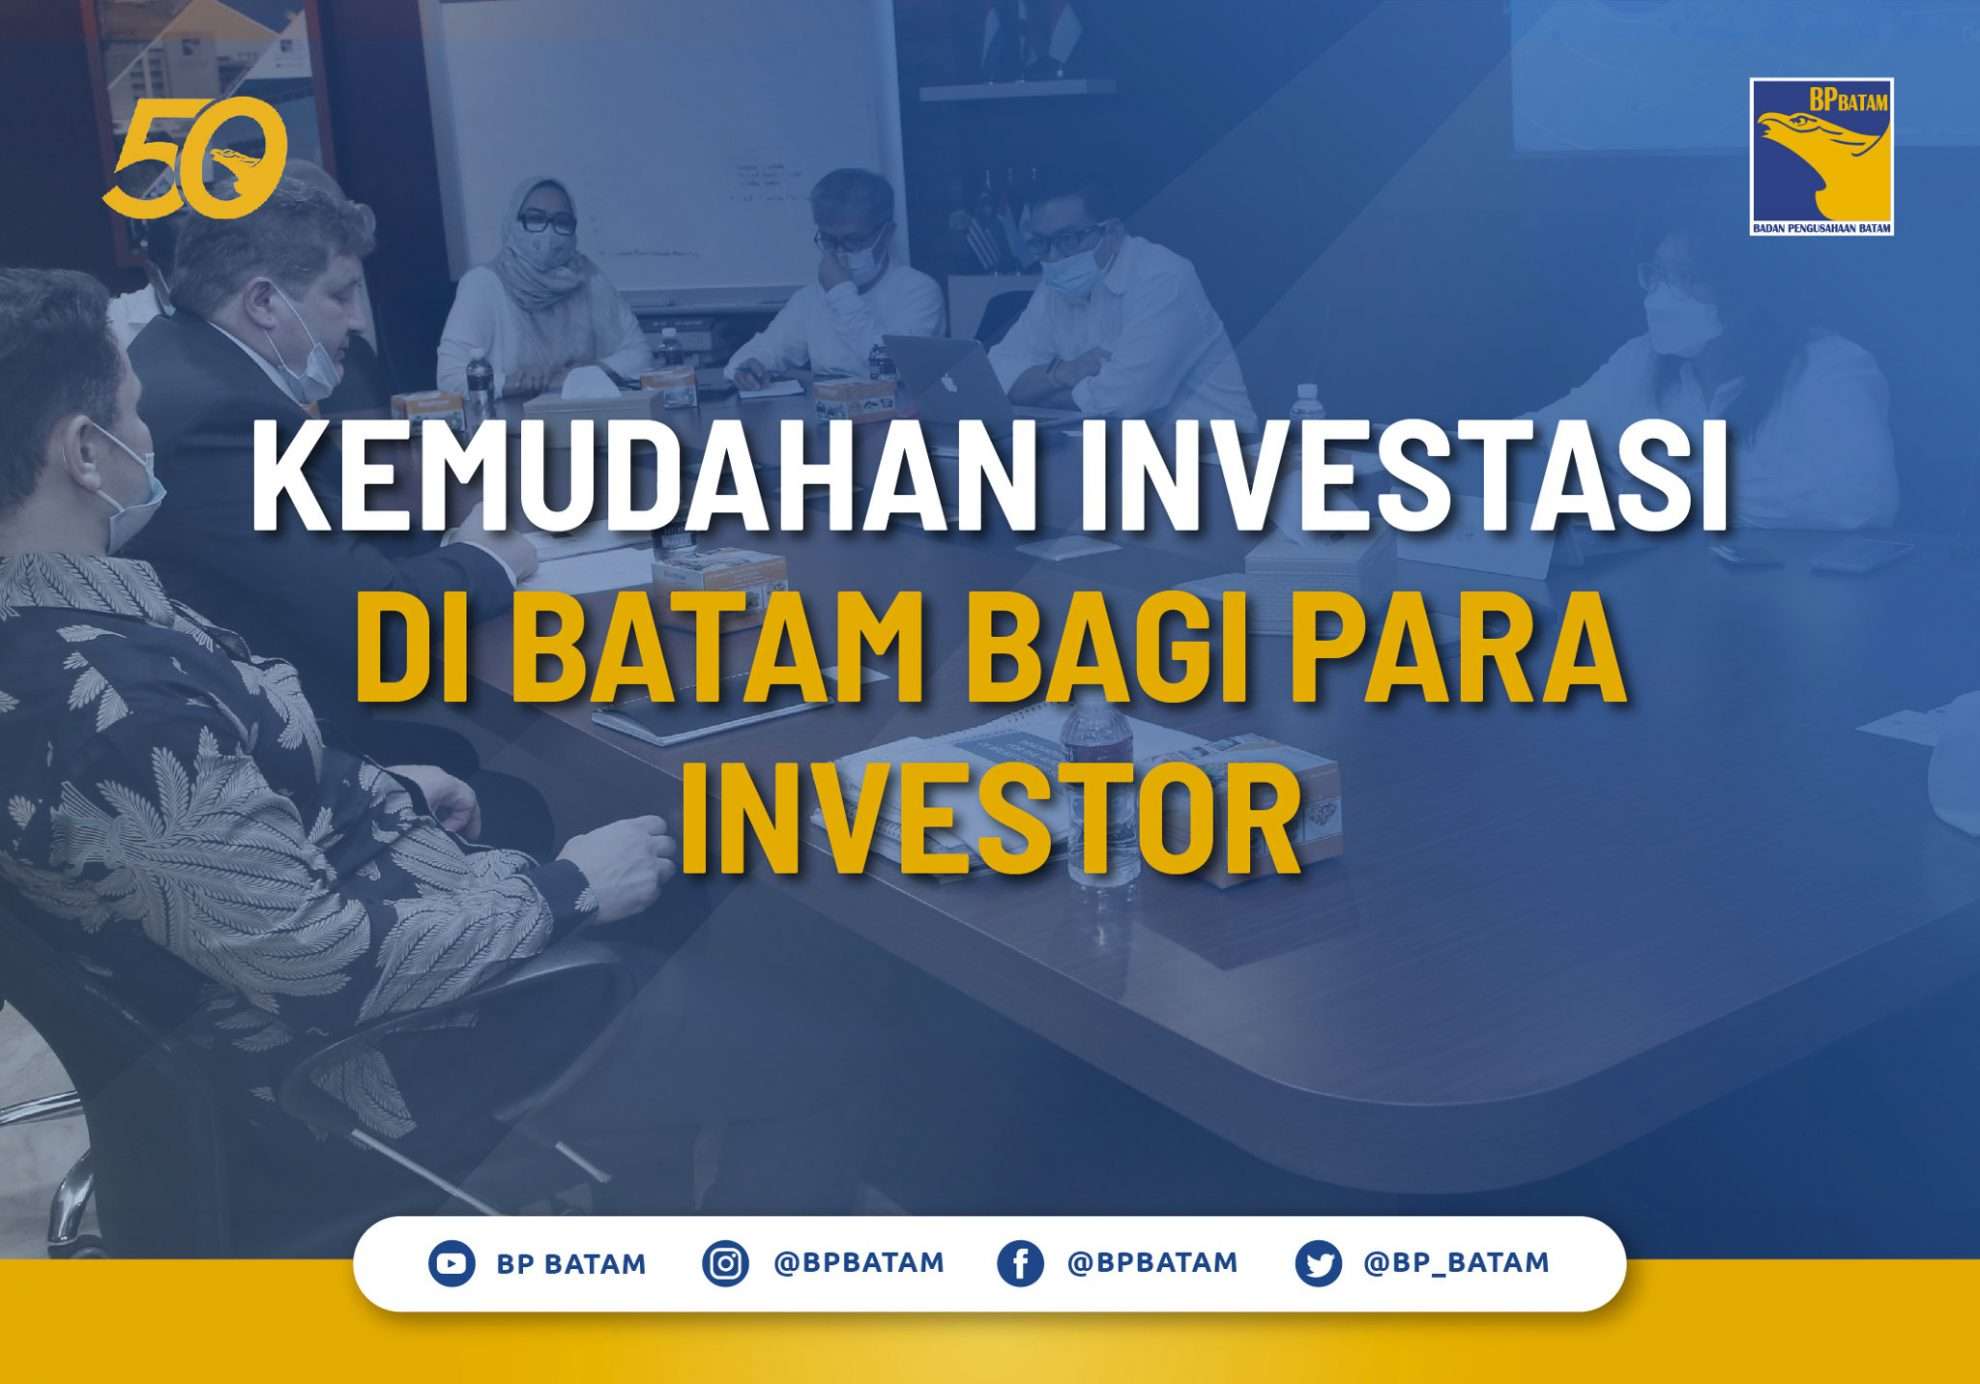 Kemudahan Investasi di Batam bagi para Investor